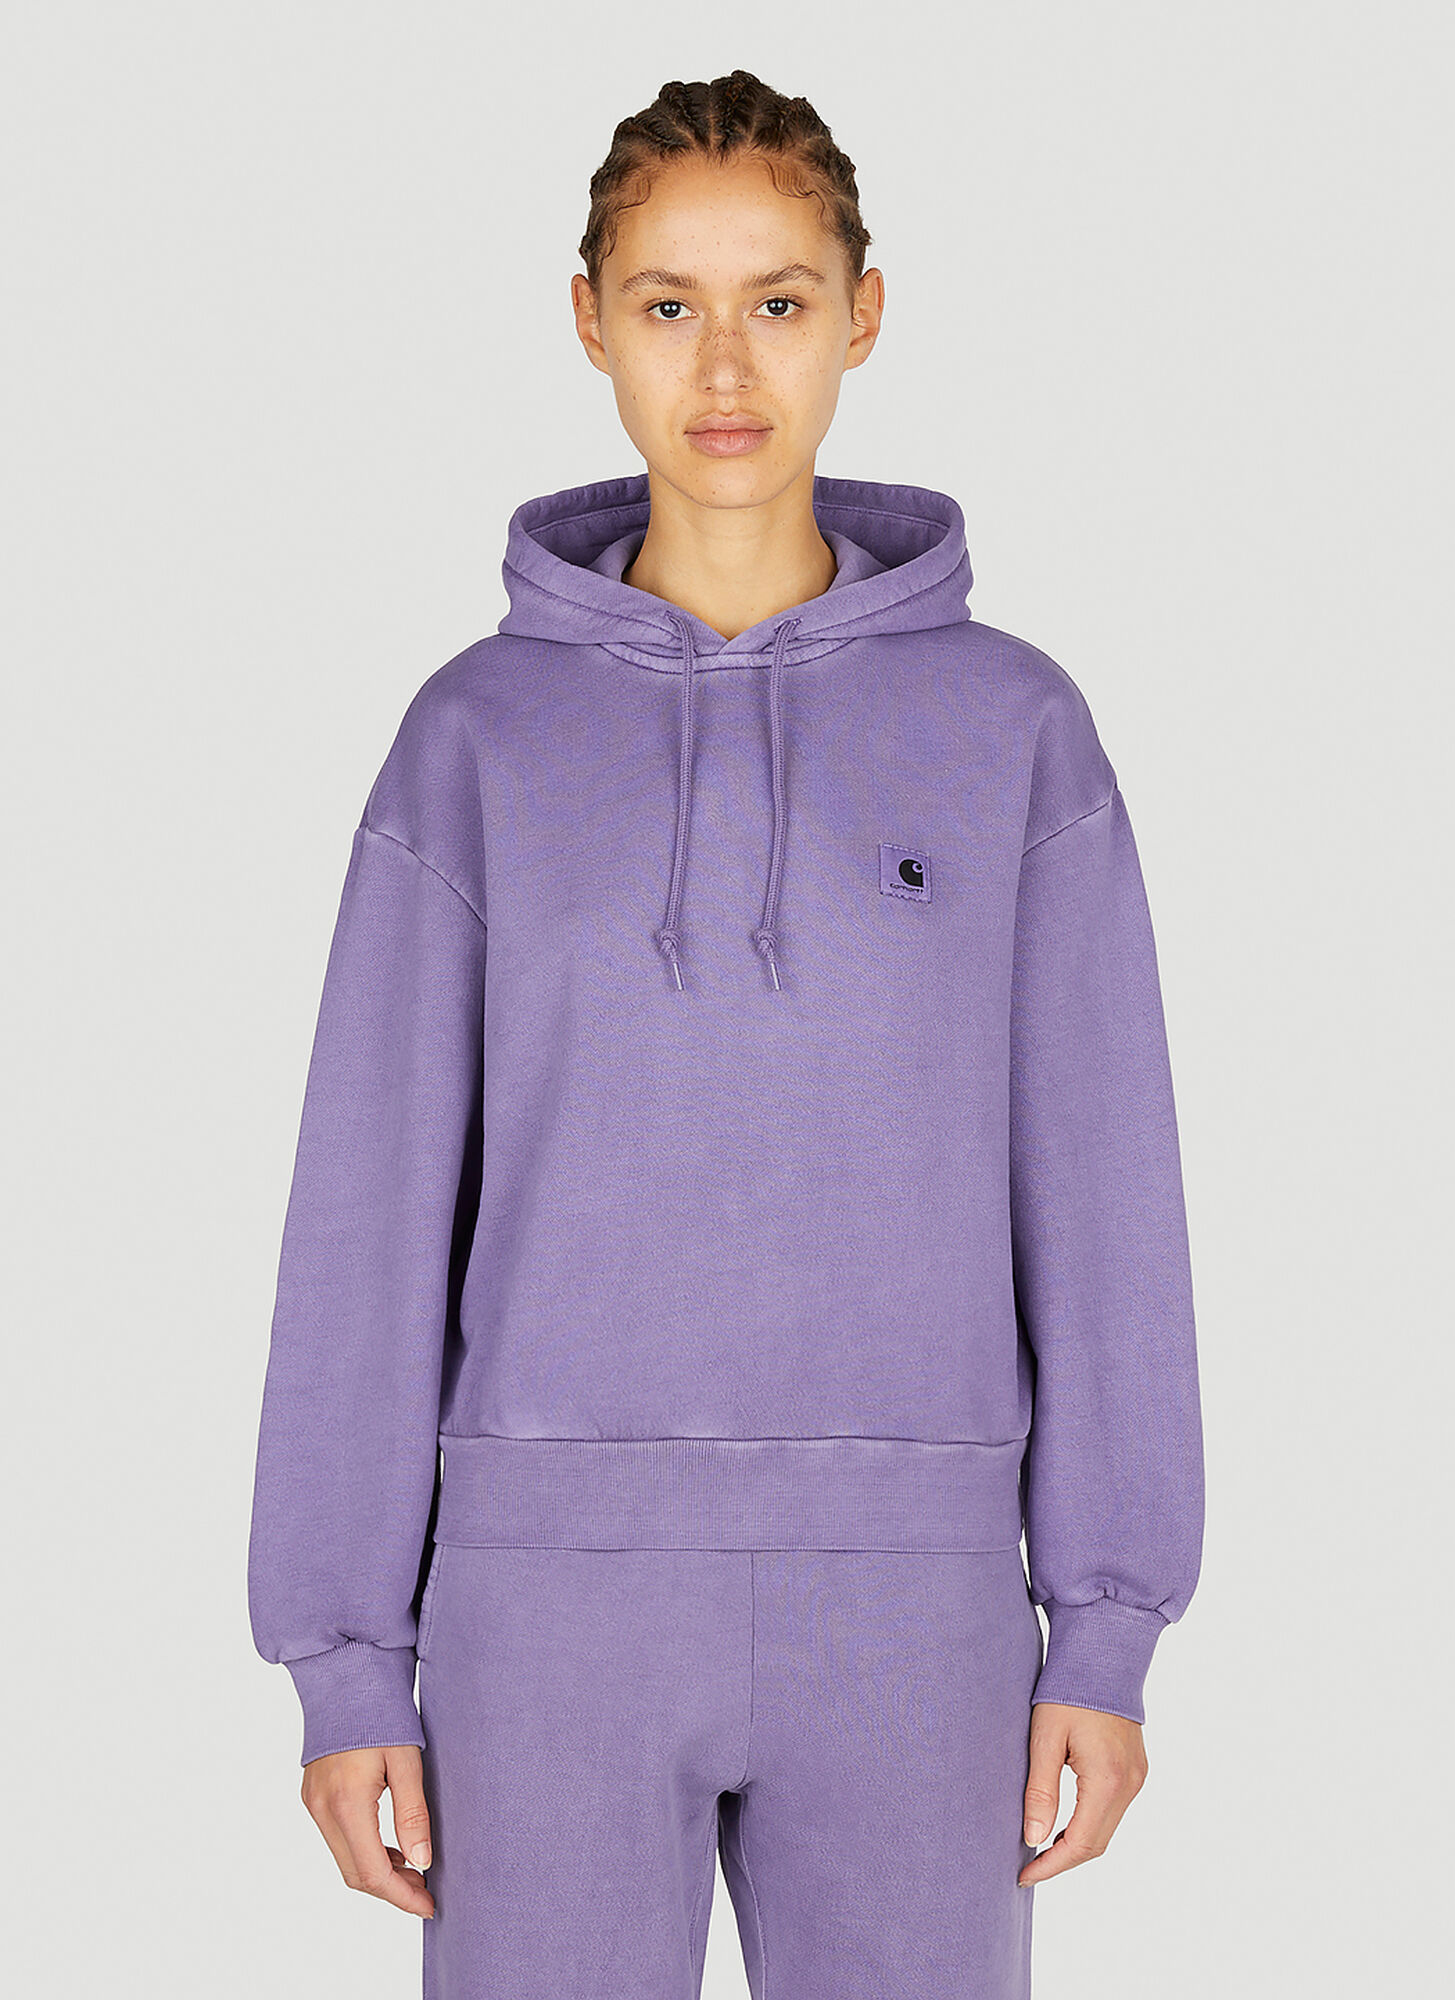 Carhartt Nelson Hooded Sweatshirt In Purple